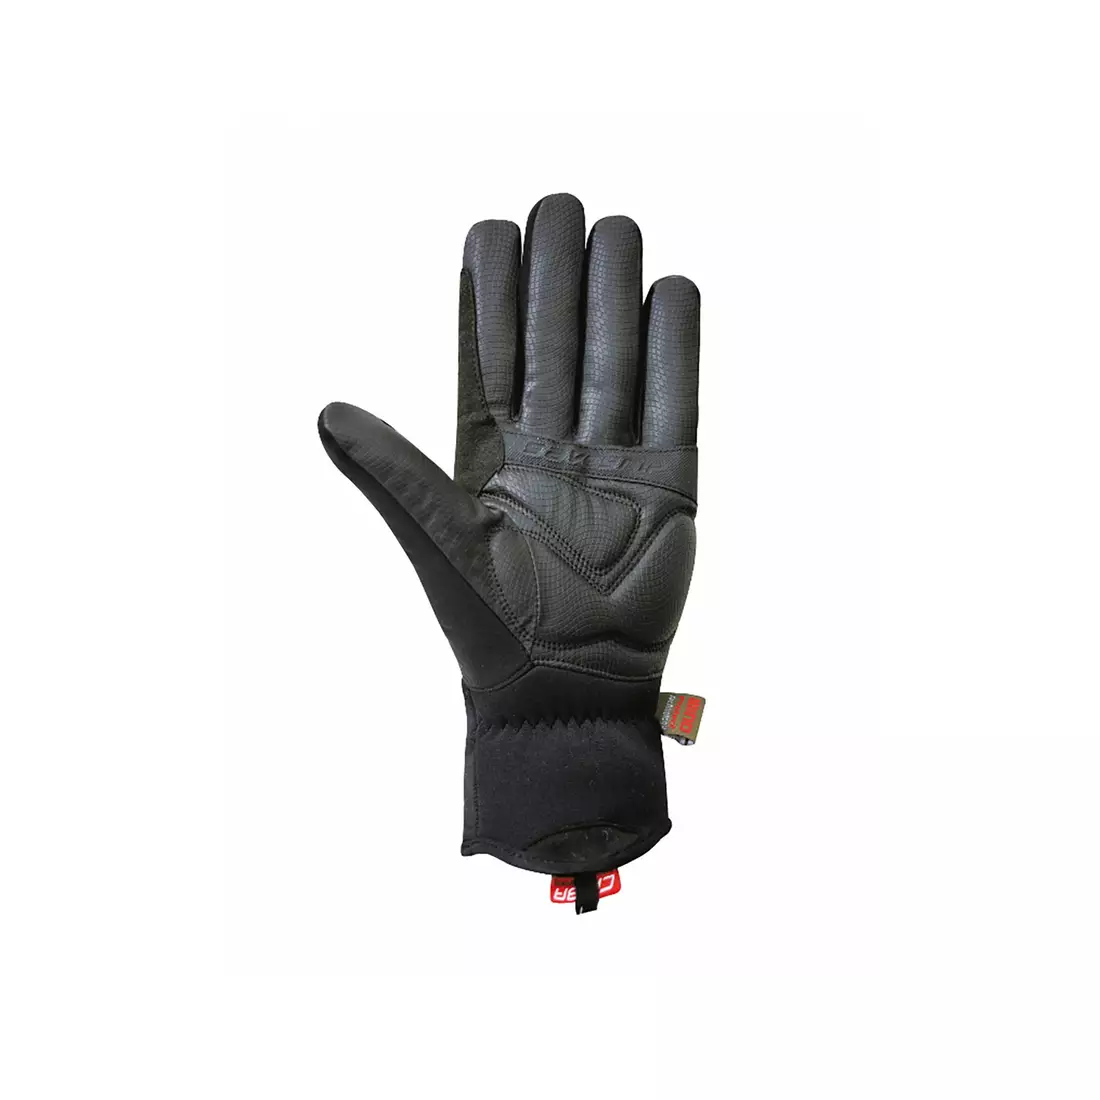 CHIBA EXPRESS+ zimní cyklistické rukavice 31176 - černé